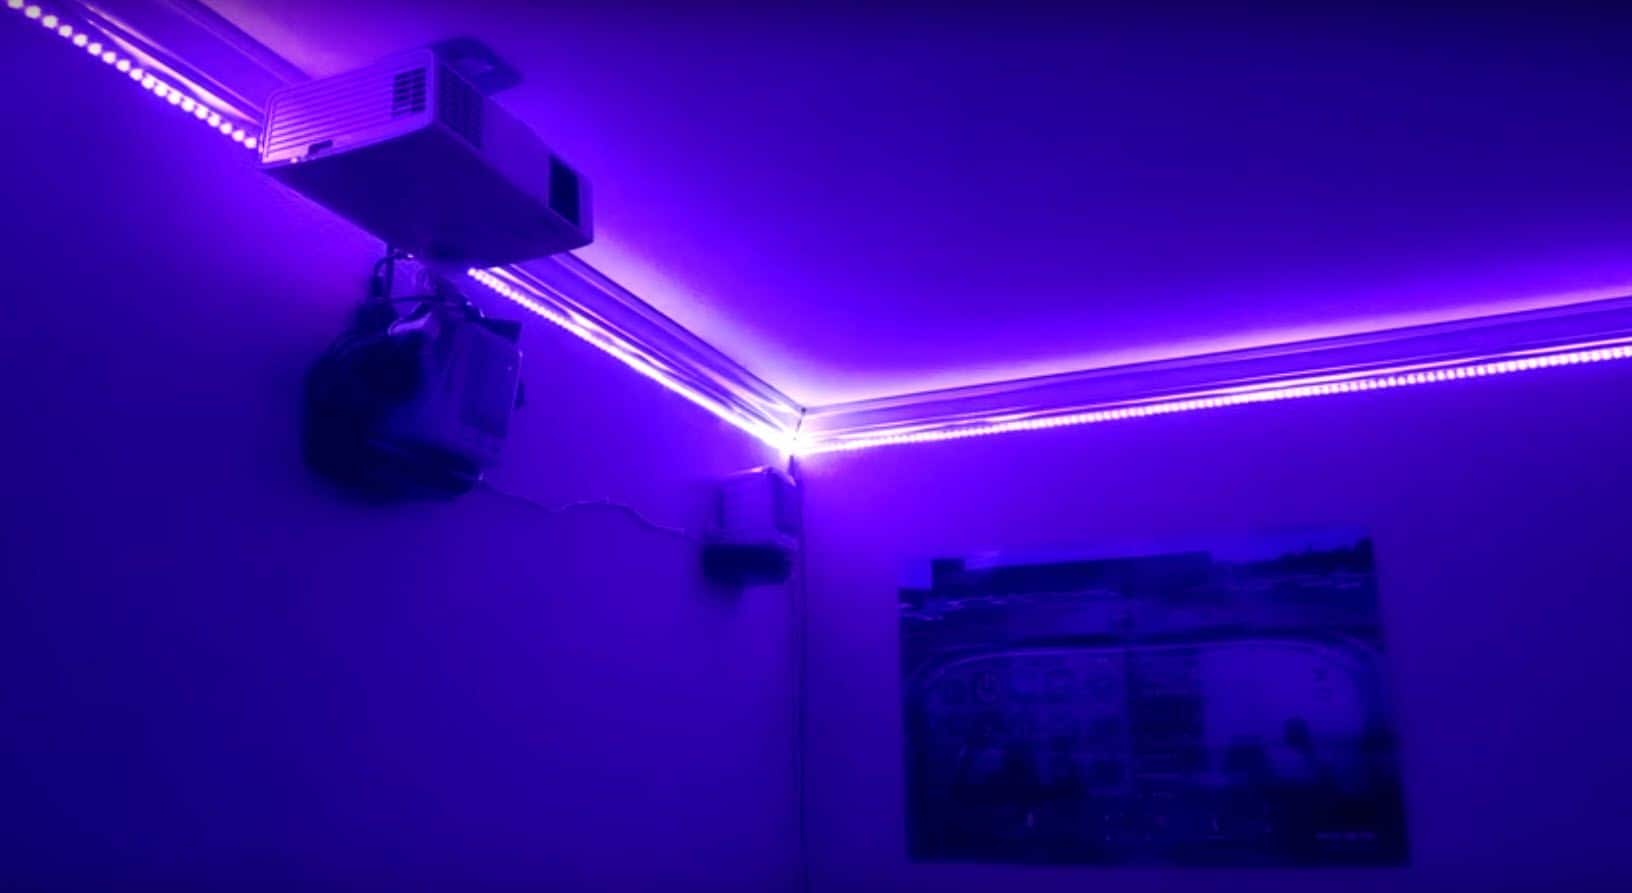 Rooms Lights: LEDs